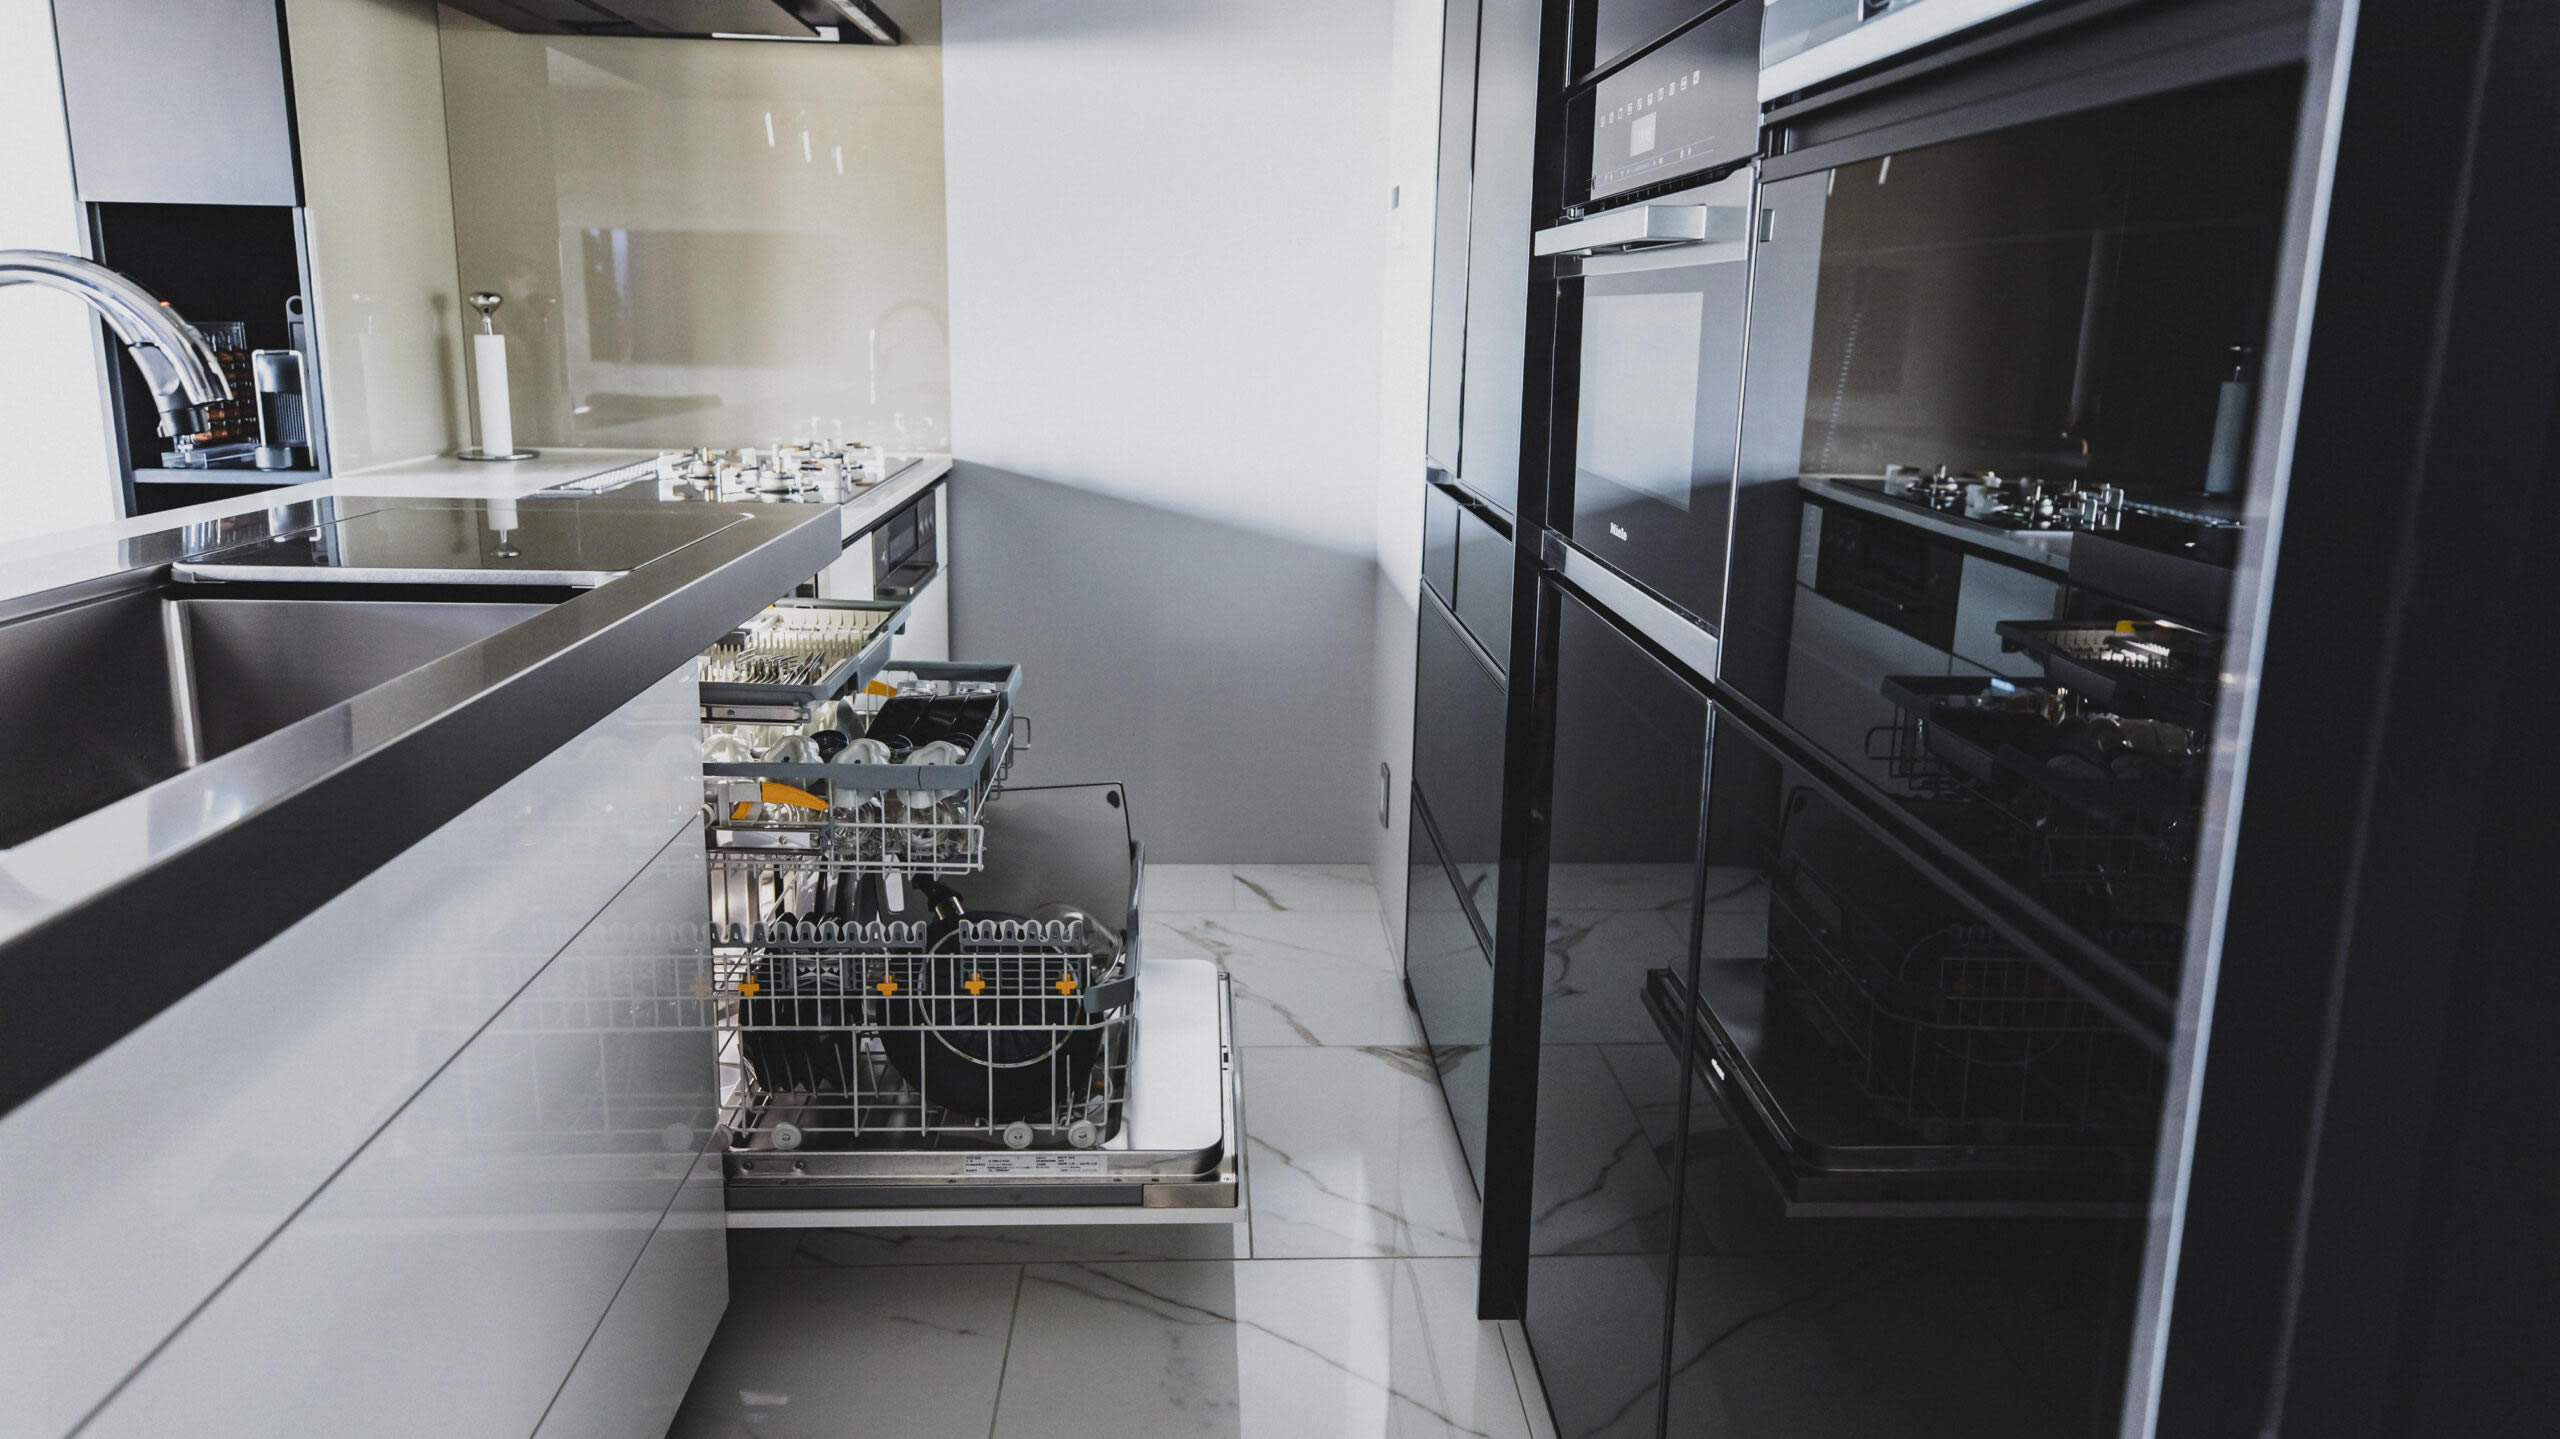 クリナップのシステムキッチン「セントロ」にMieleビルトイン食器洗い機とオーブンを